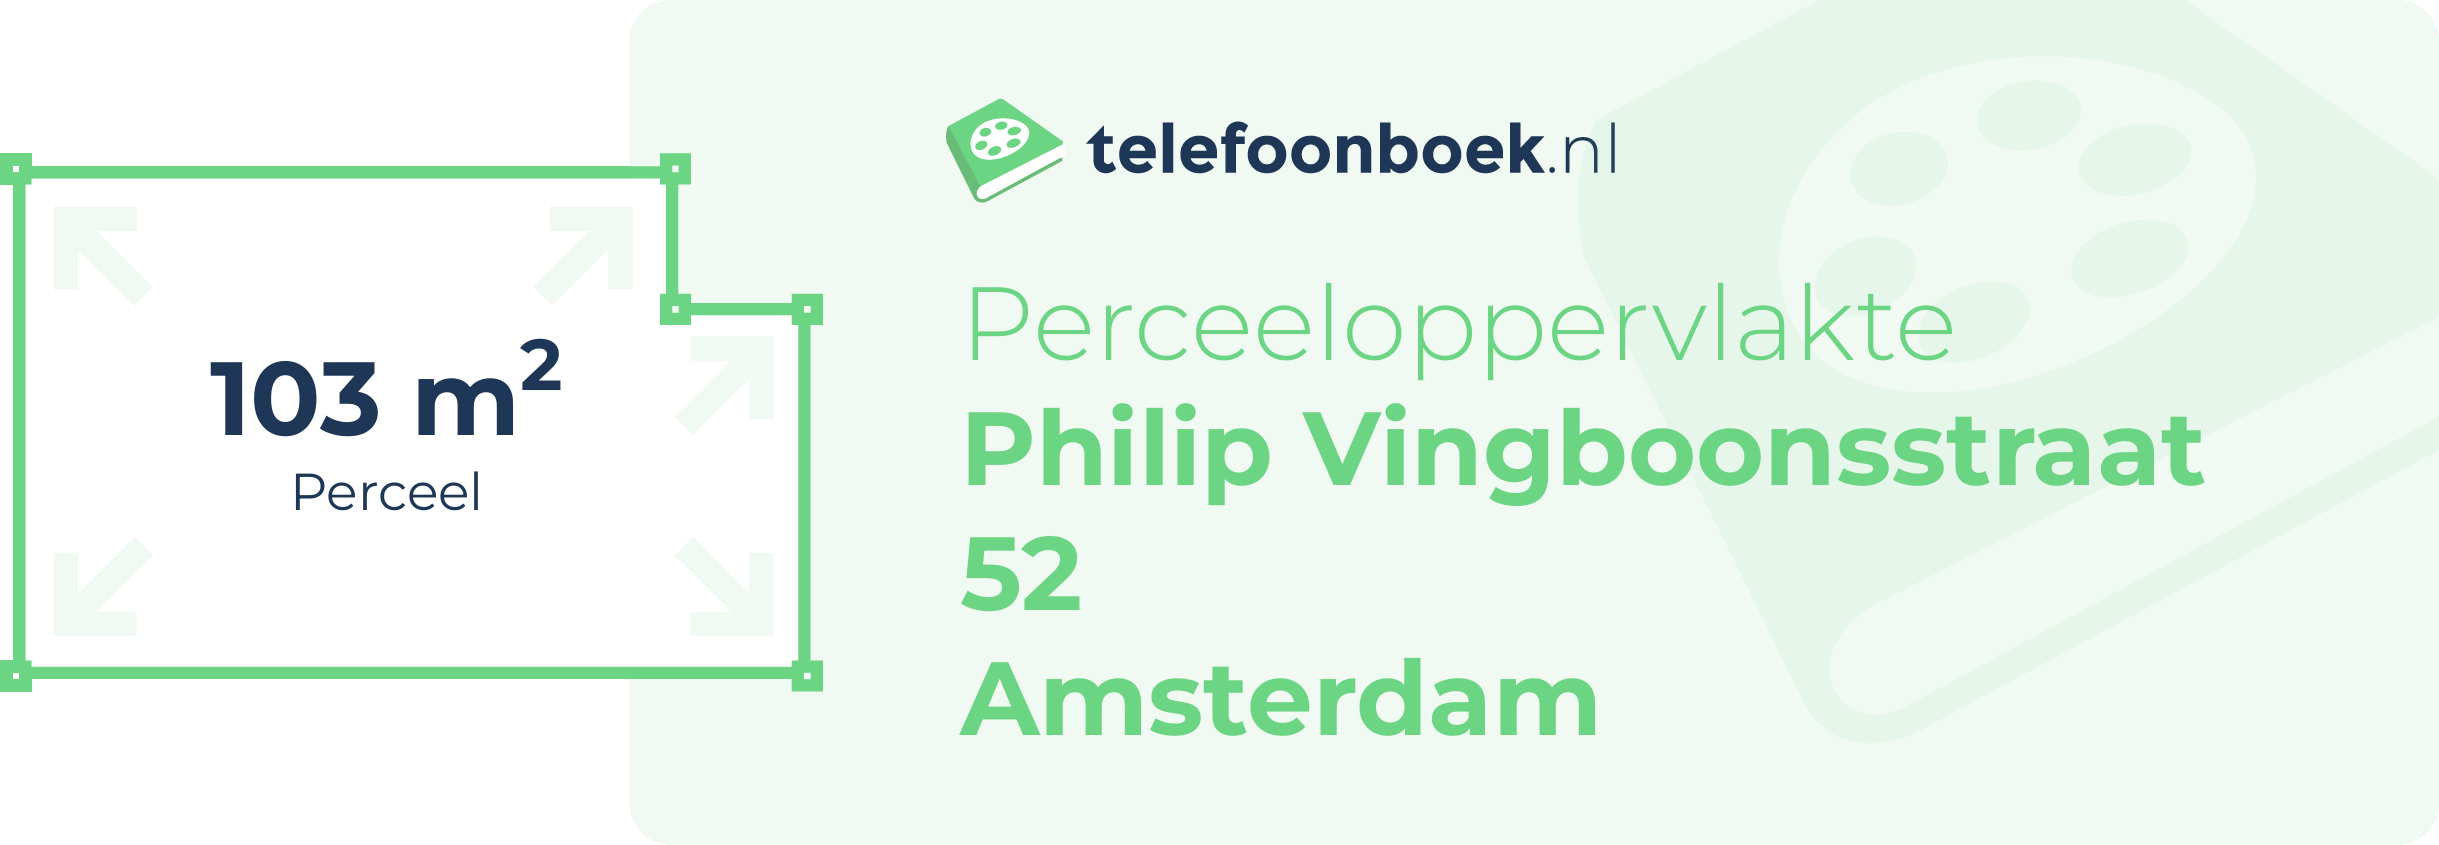 Perceeloppervlakte Philip Vingboonsstraat 52 Amsterdam